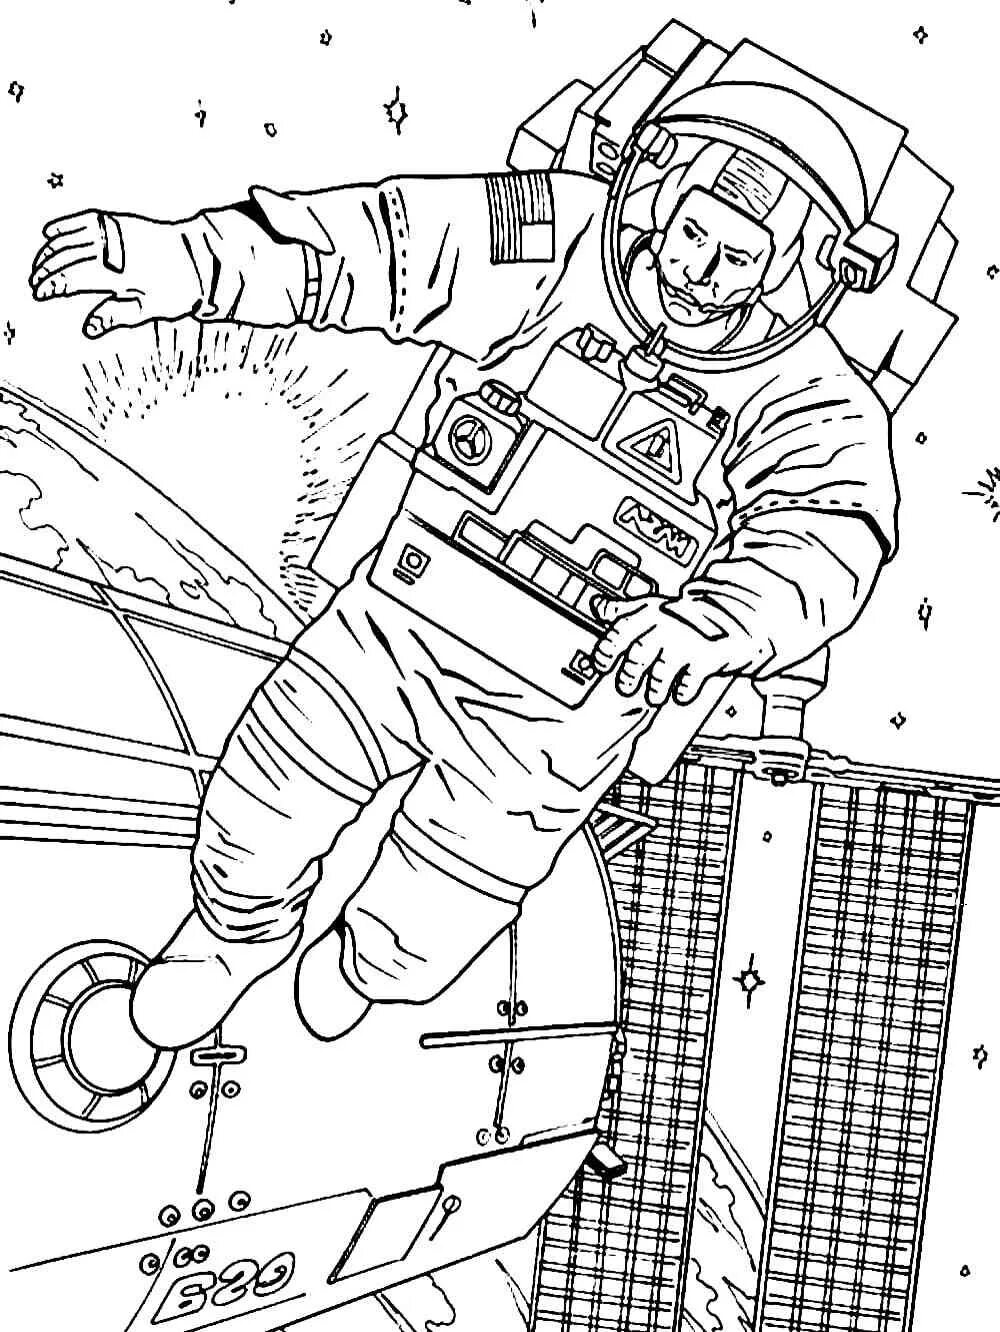 Рисунок ко дню космонавтики черно белый. Космонавт раскраска для детей. Космос раскраска для детей. Раскраска про космос и Космонавтов для детей. Космонавтика раскраски для детей.